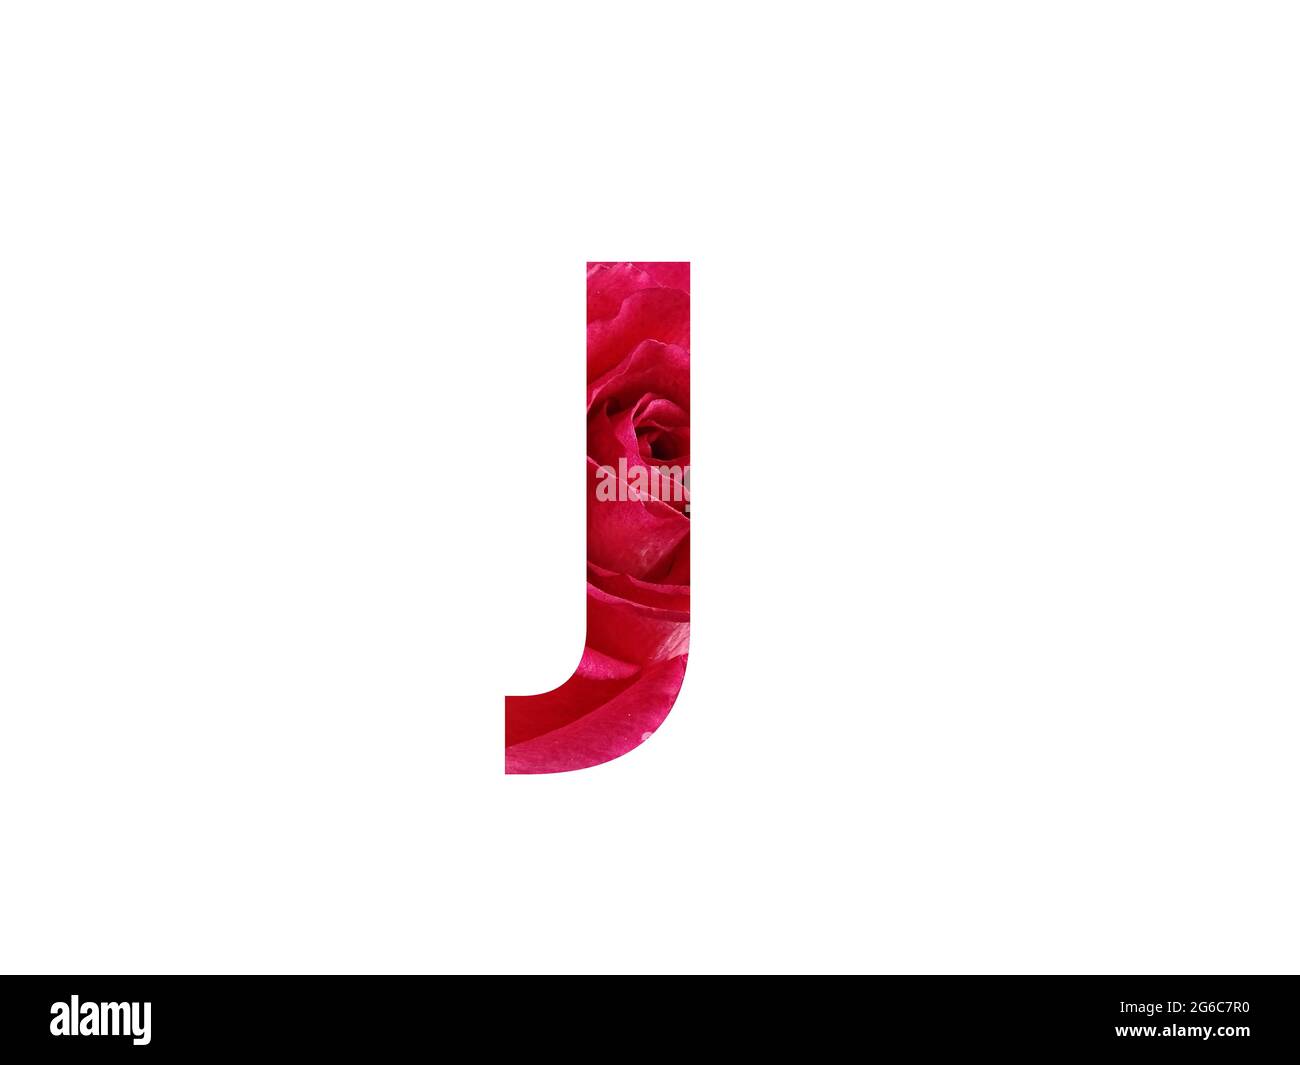 Lettera J dell'alfabeto fatta con una foto di una rosa rossa, isolata su sfondo bianco Foto Stock